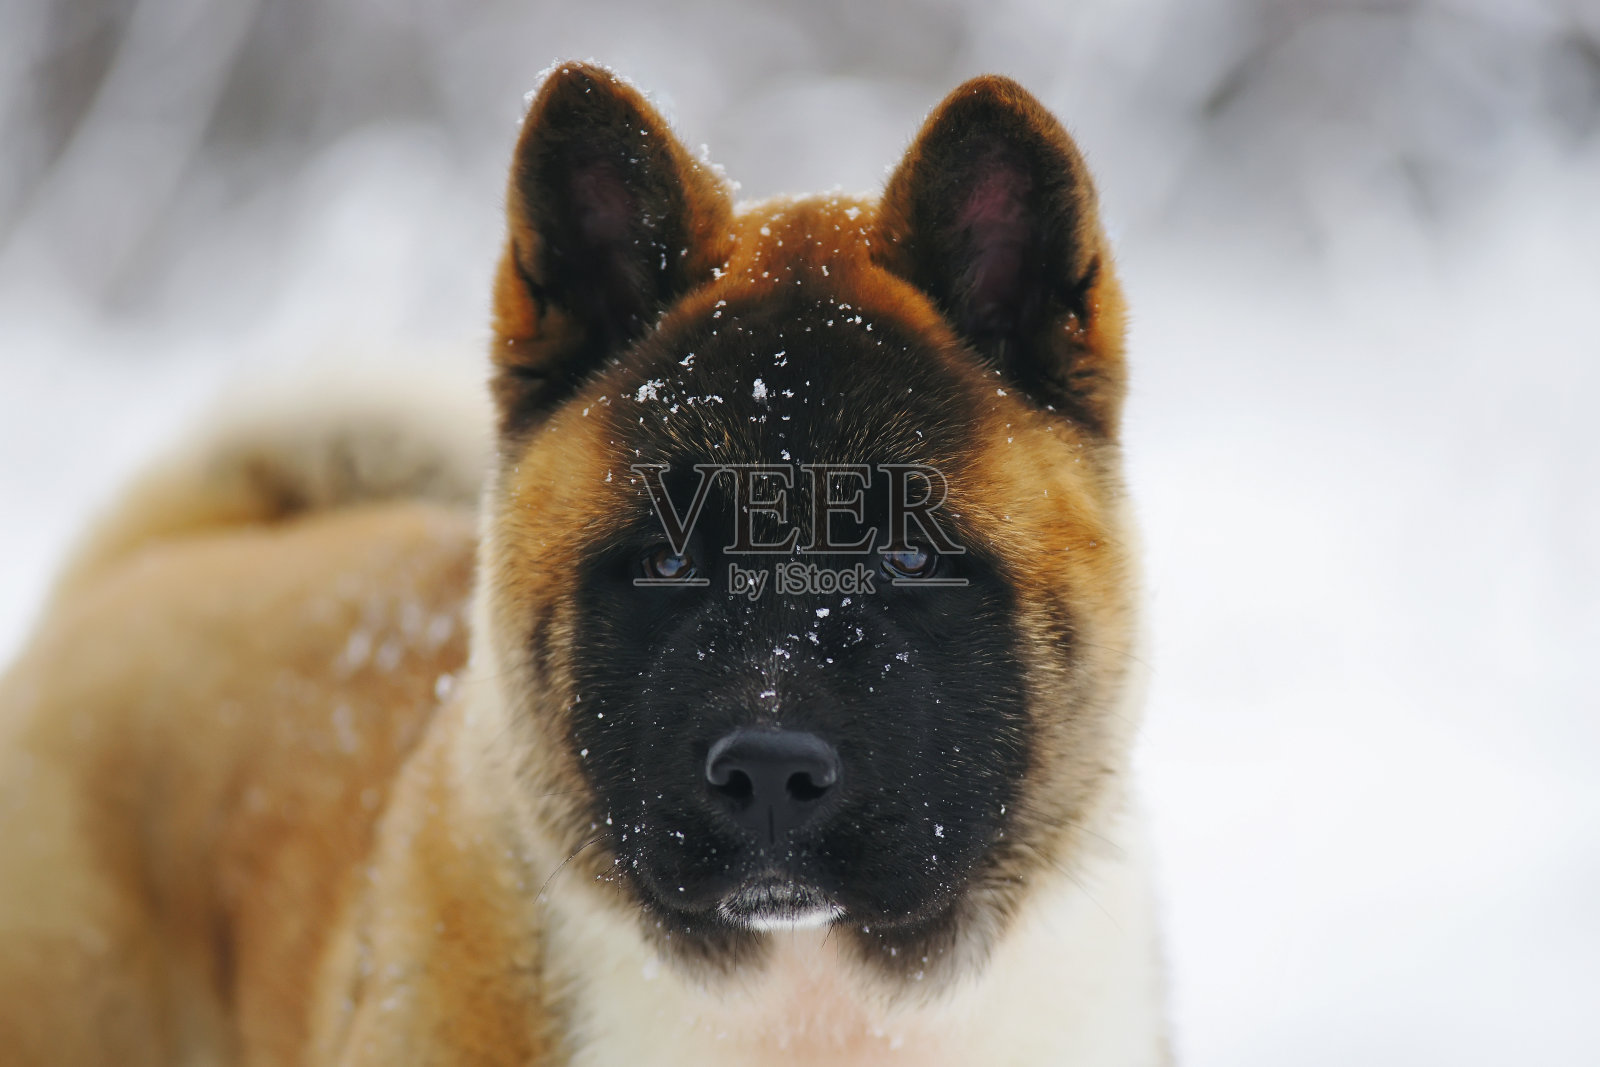 这是一只美国秋田犬在冬天的肖像照片摄影图片